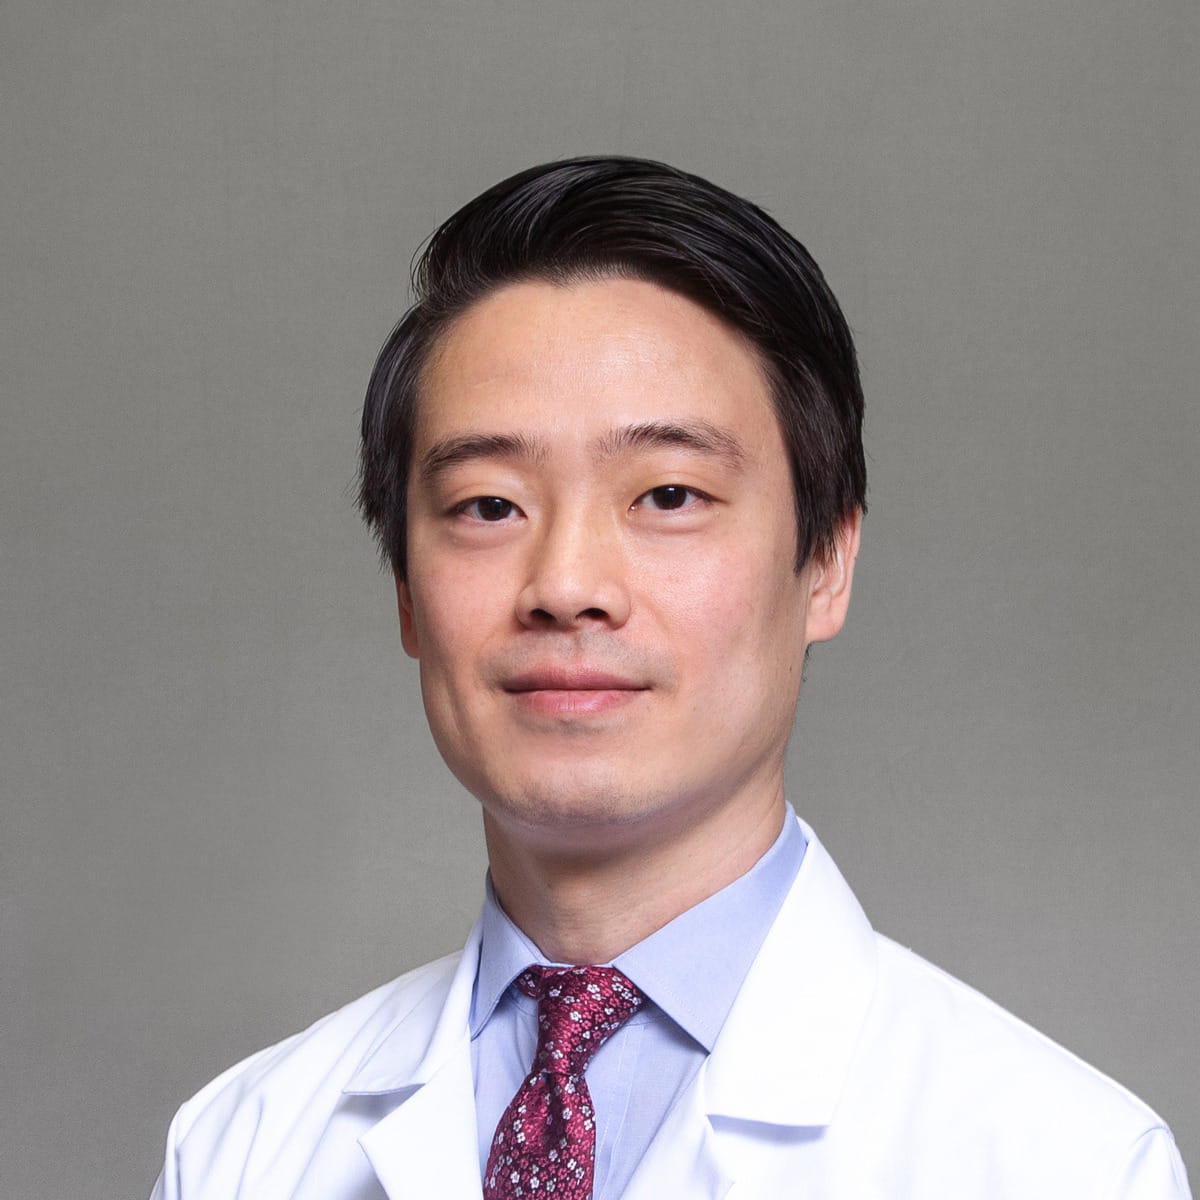 Dr. Zhong Zheng